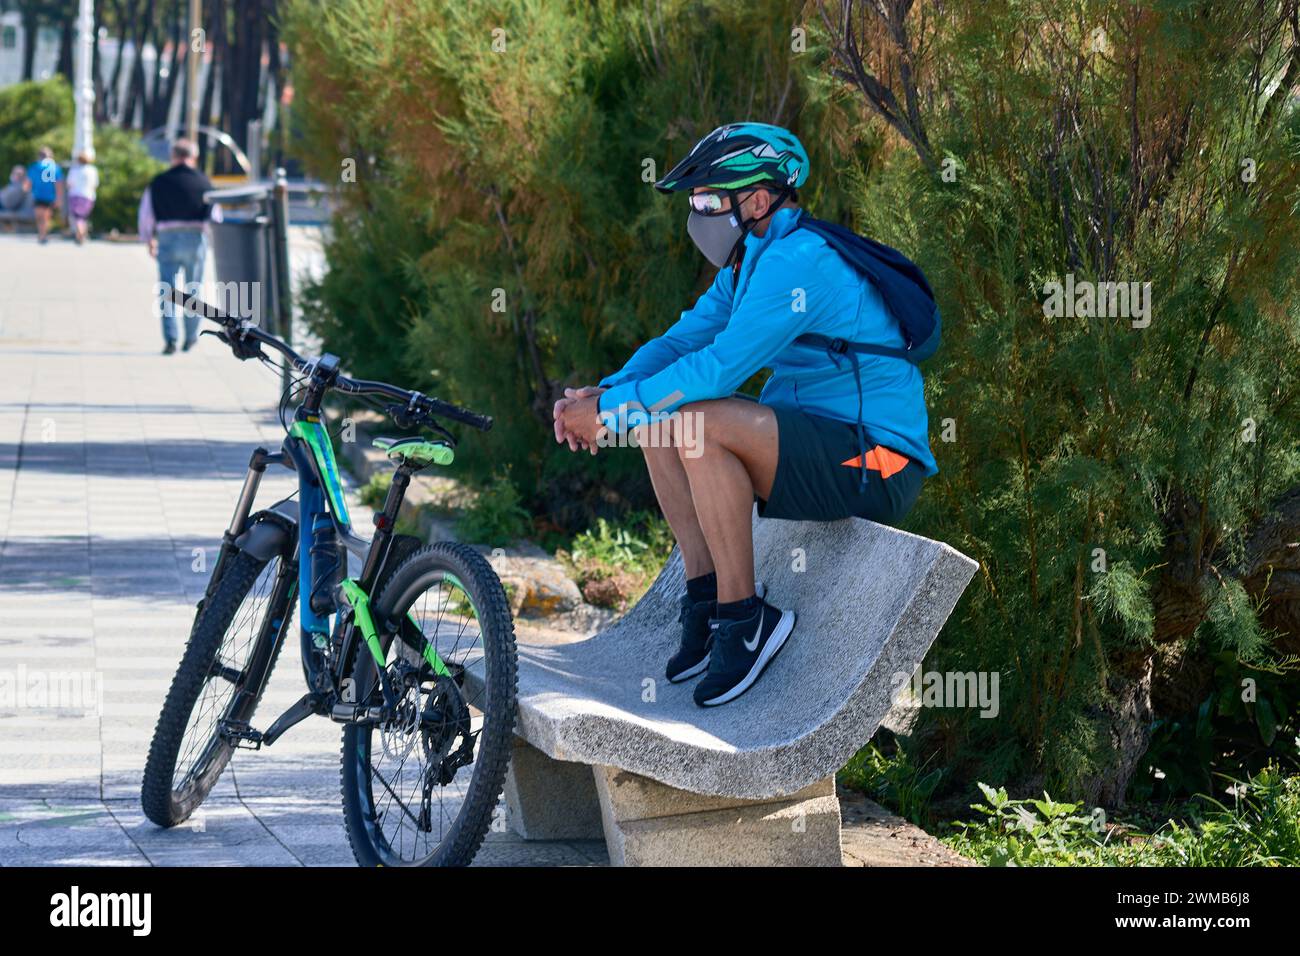 Vigo, Pontevedra, Spanien; 23. Juni 2021; MTB-Radfahrer mit Brille, Helm, Maske sitzt auf einer Bank neben seinem Fahrrad Stockfoto